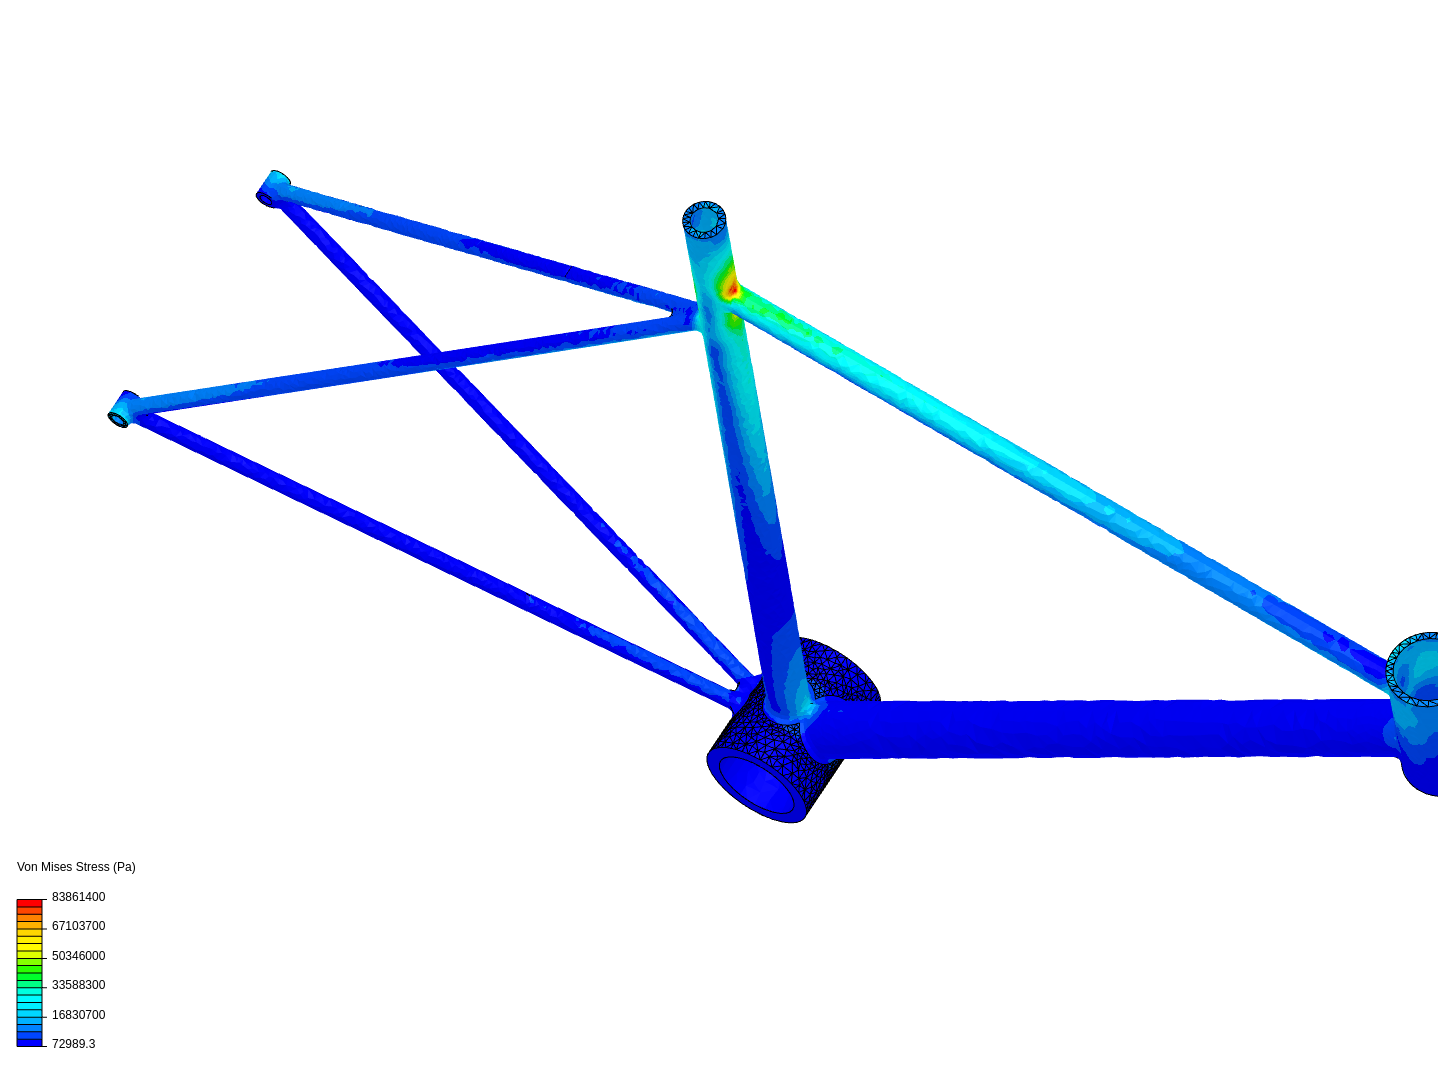 Bicycle frame stress analysis image